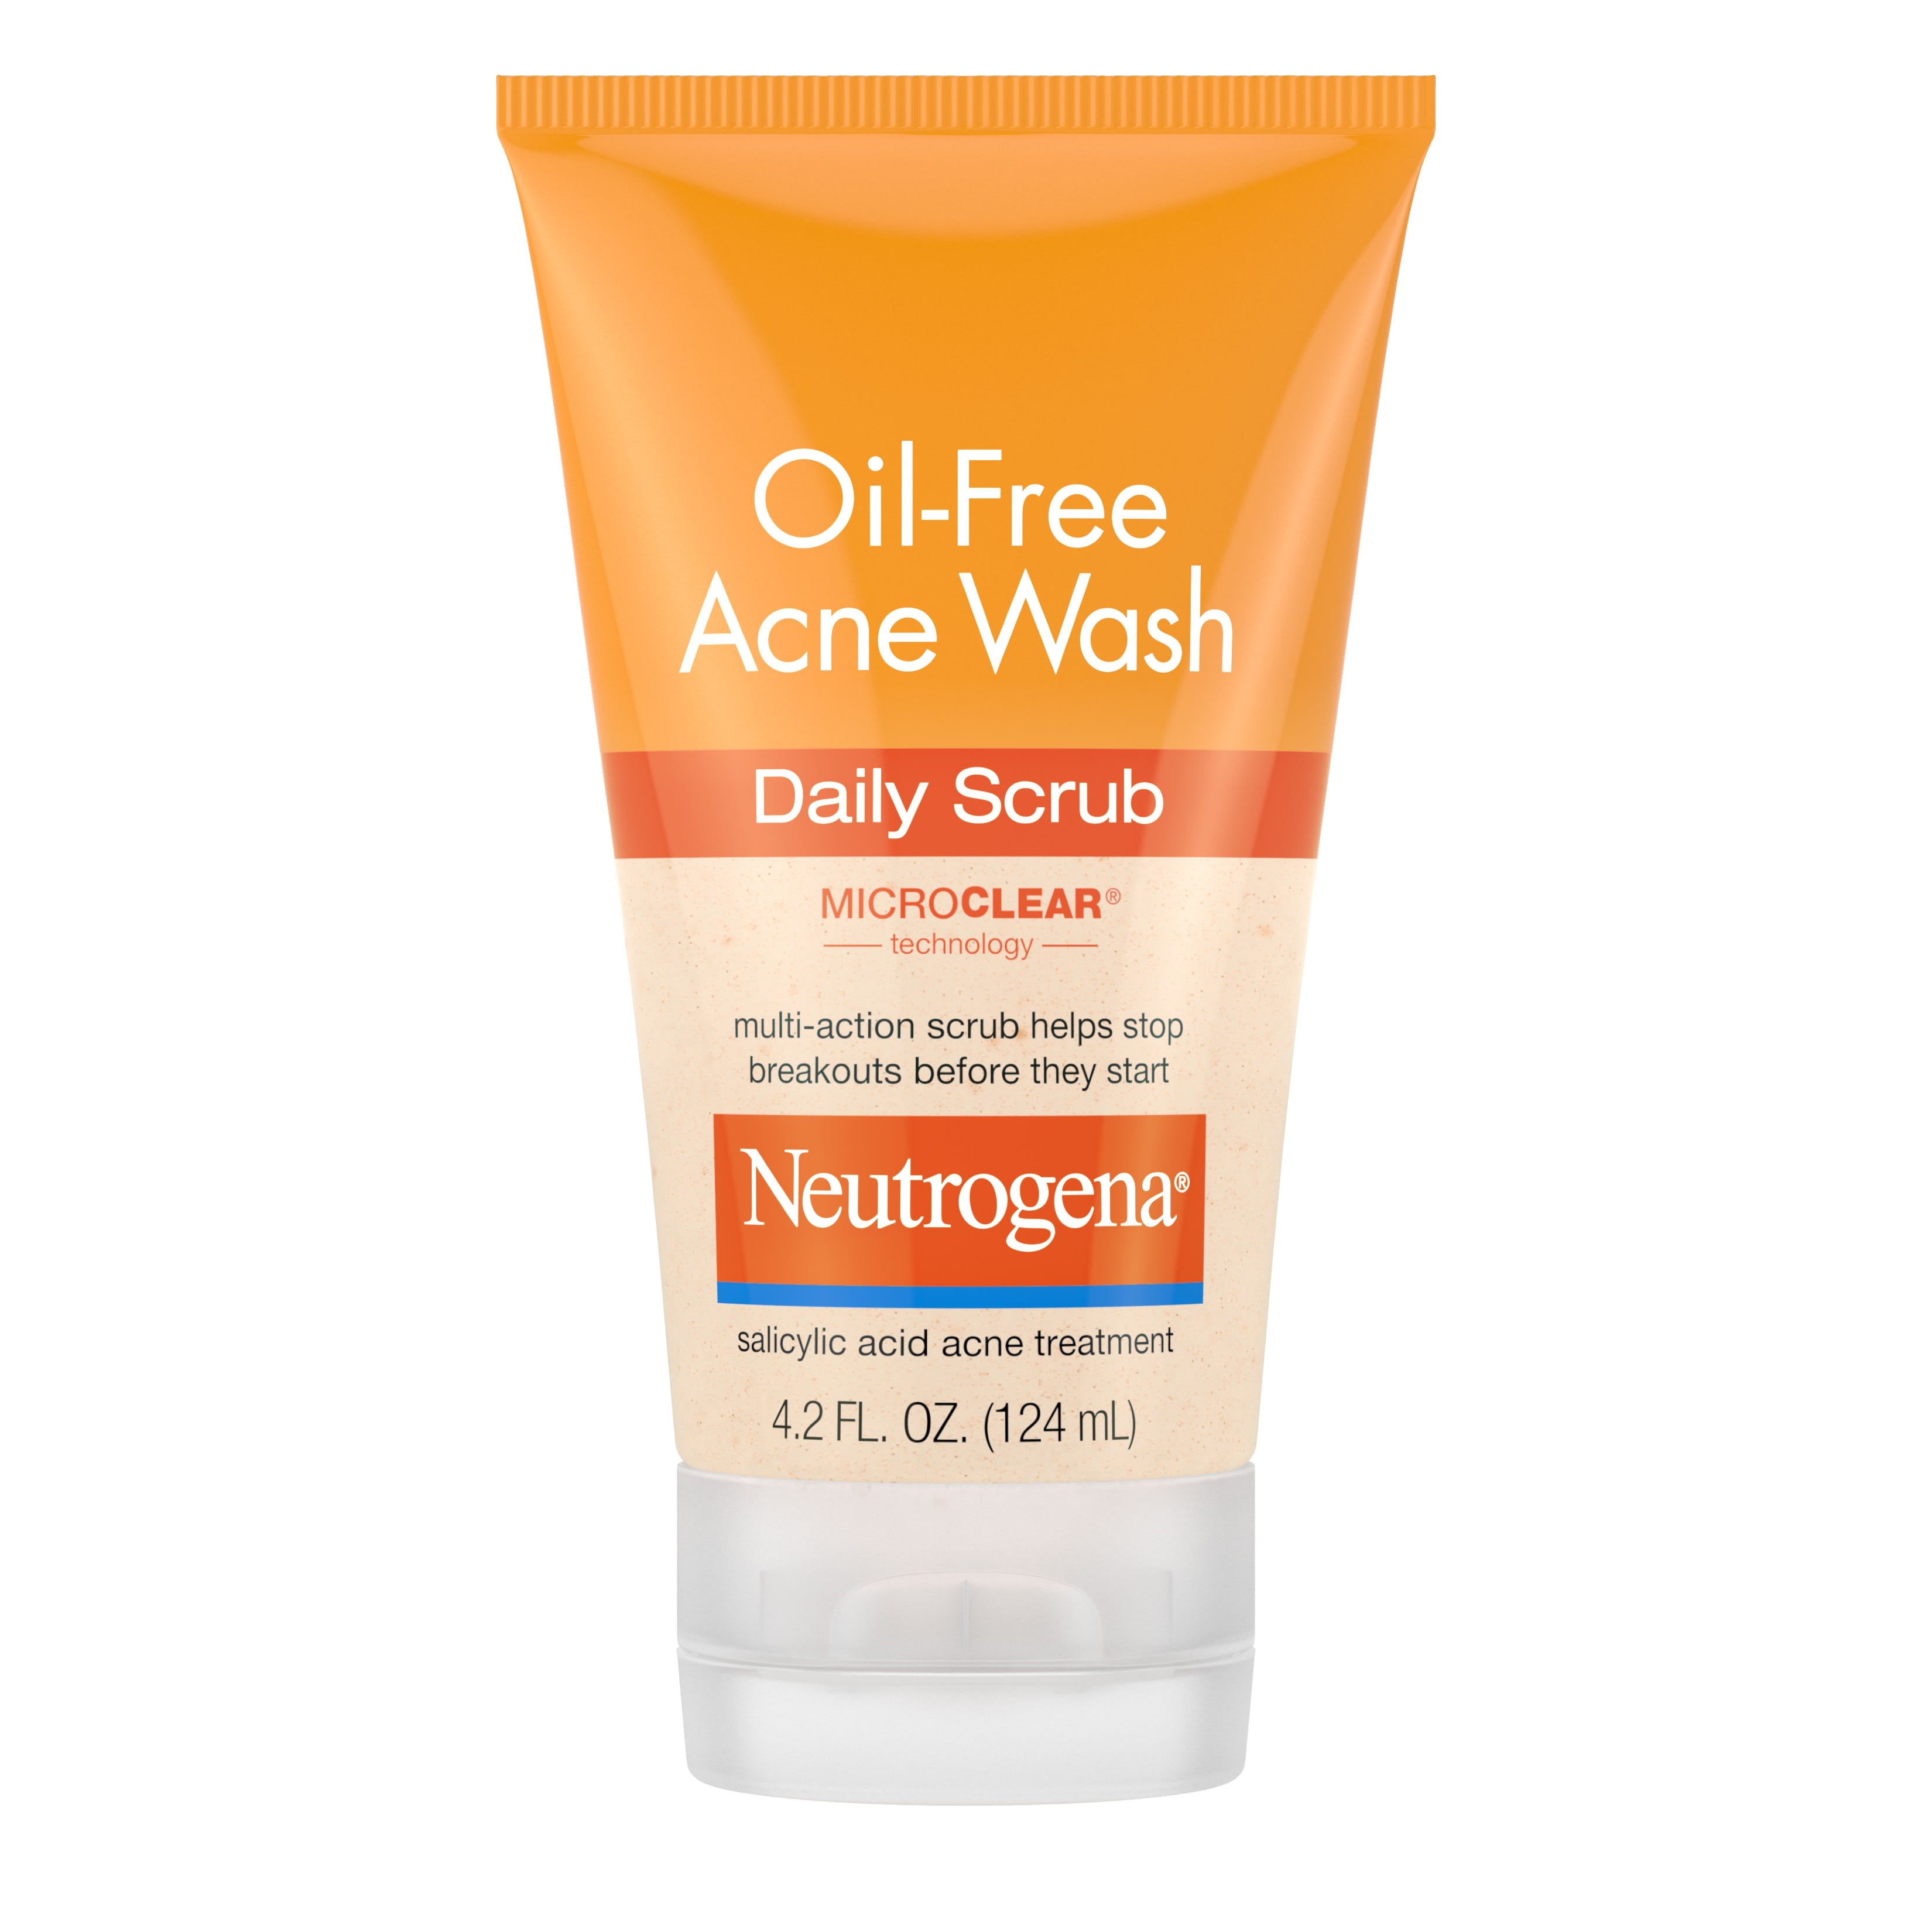 Neutrogena Oil-Free Acne Face Scrub with 2% Salicylic Acid, 4.2 fl. oz